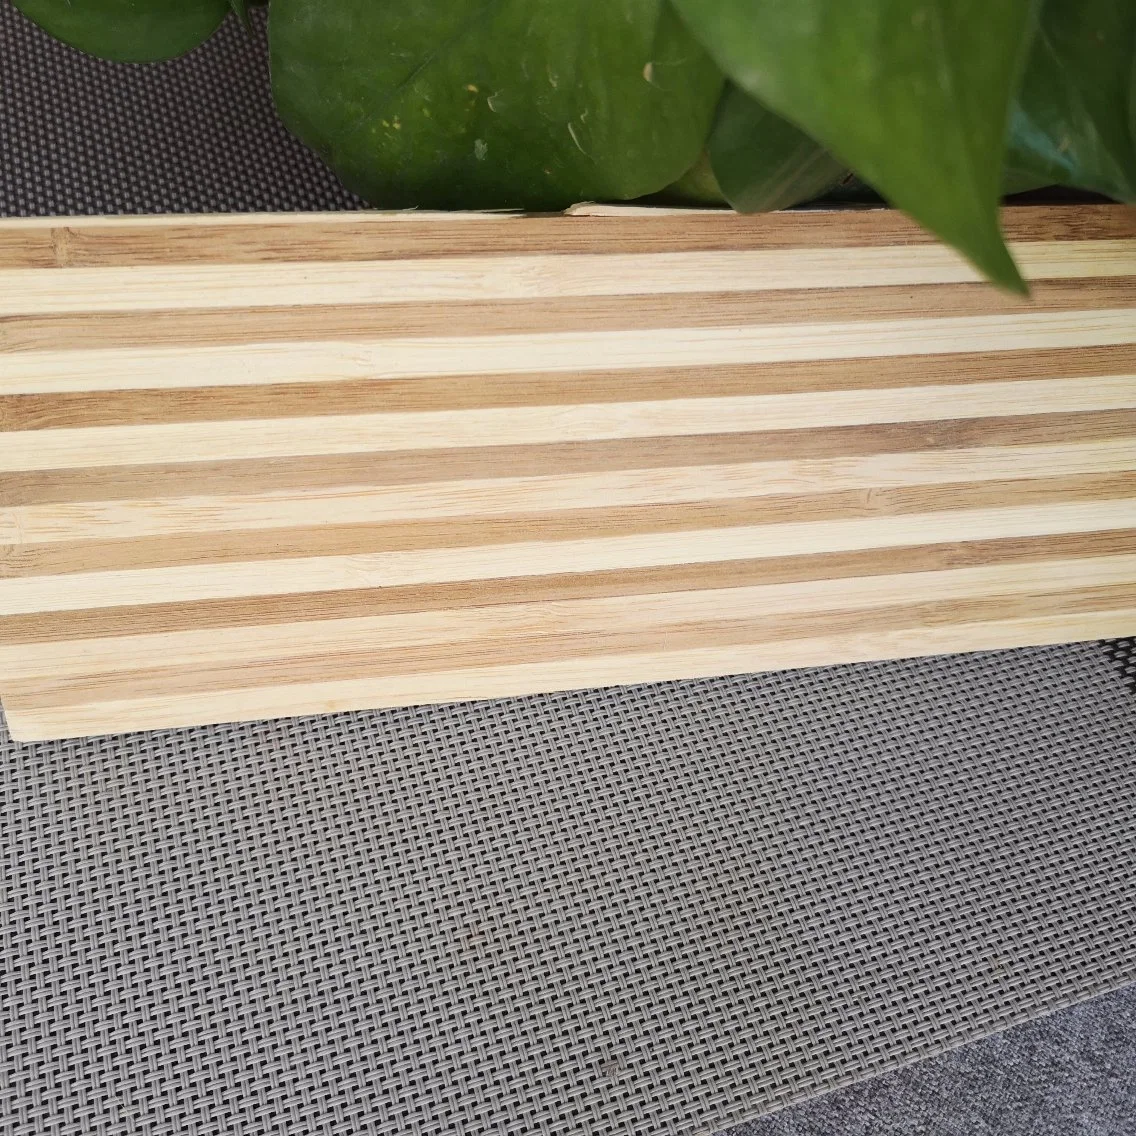 На заводе прямой продажи бамбук лист фанеры из бамбука по лесоматериалам